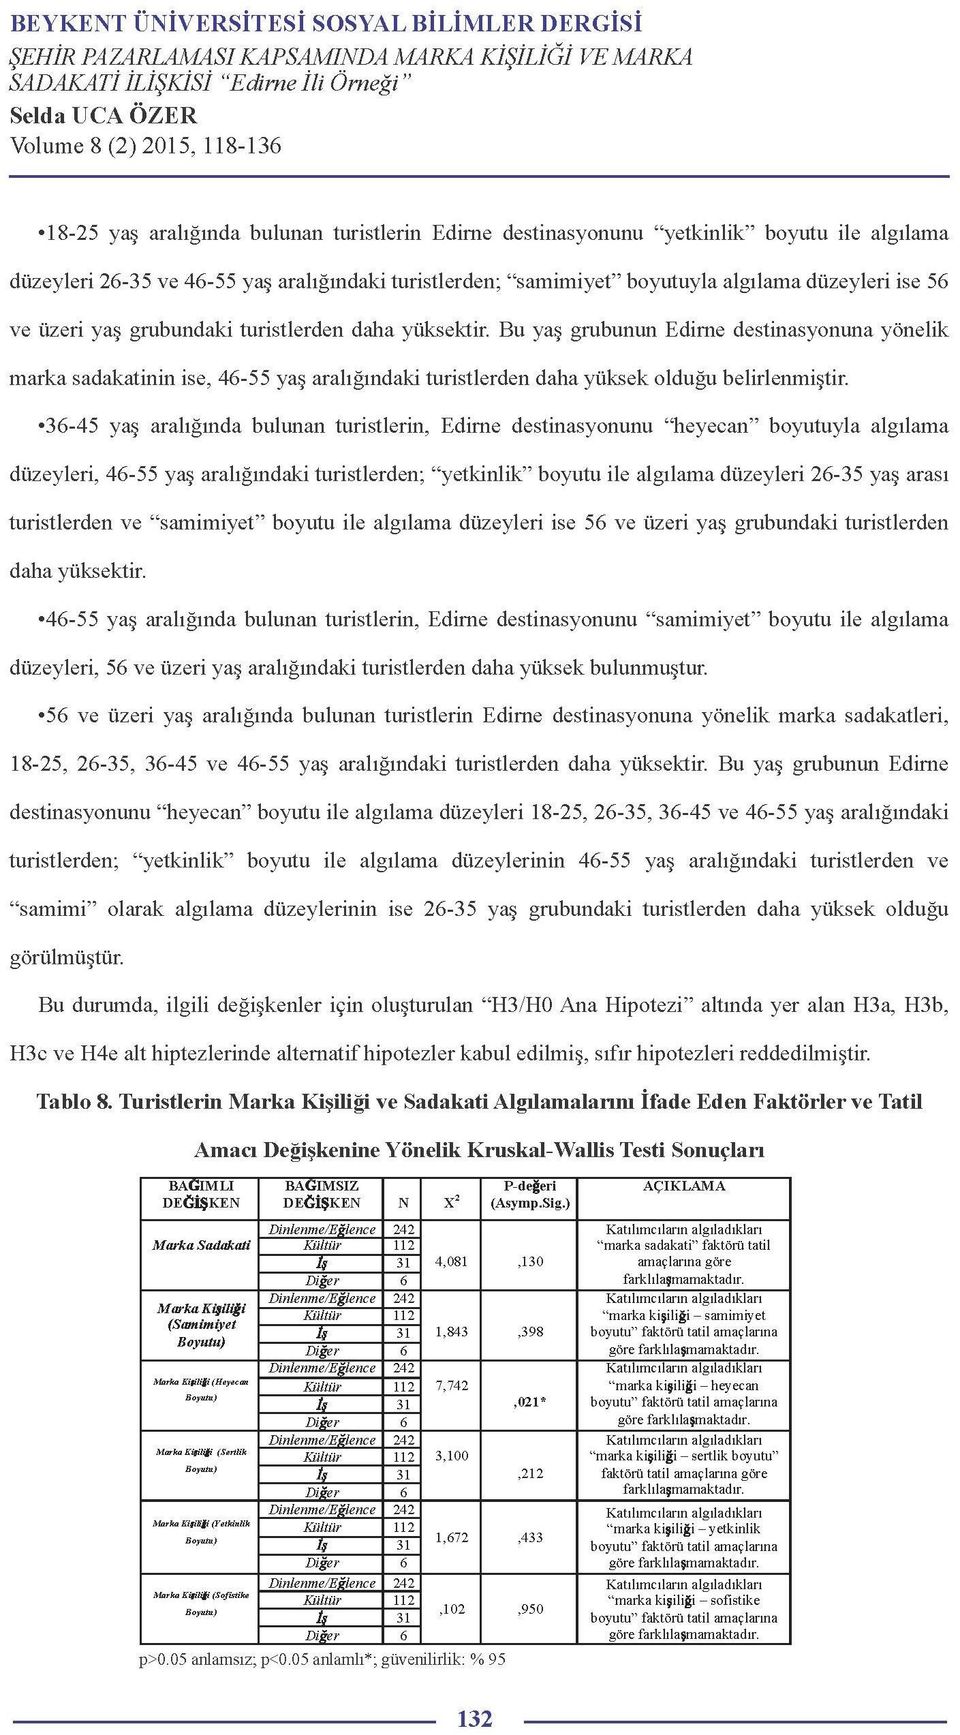 36-45 yaş aralığında bulunan turistlerin, Edirne destinasyonunu "heyecan" boyutuyla algılama düzeyleri, 46-55 yaş aralığındaki turistlerden; "yetkinlik" boyutu ile algılama düzeyleri 26-35 yaş arası